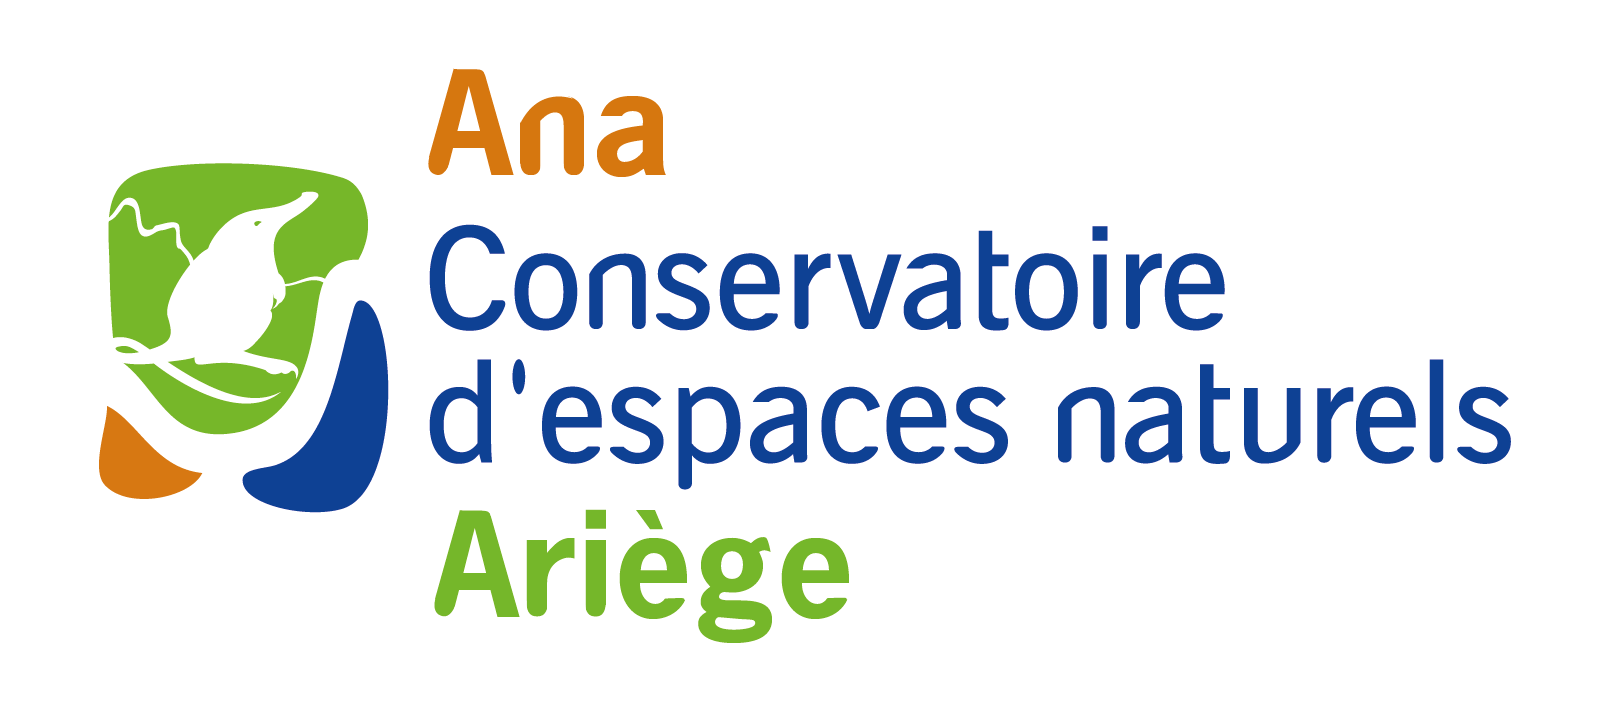 Ana - Conservatoire d'espaces naturels Ariège